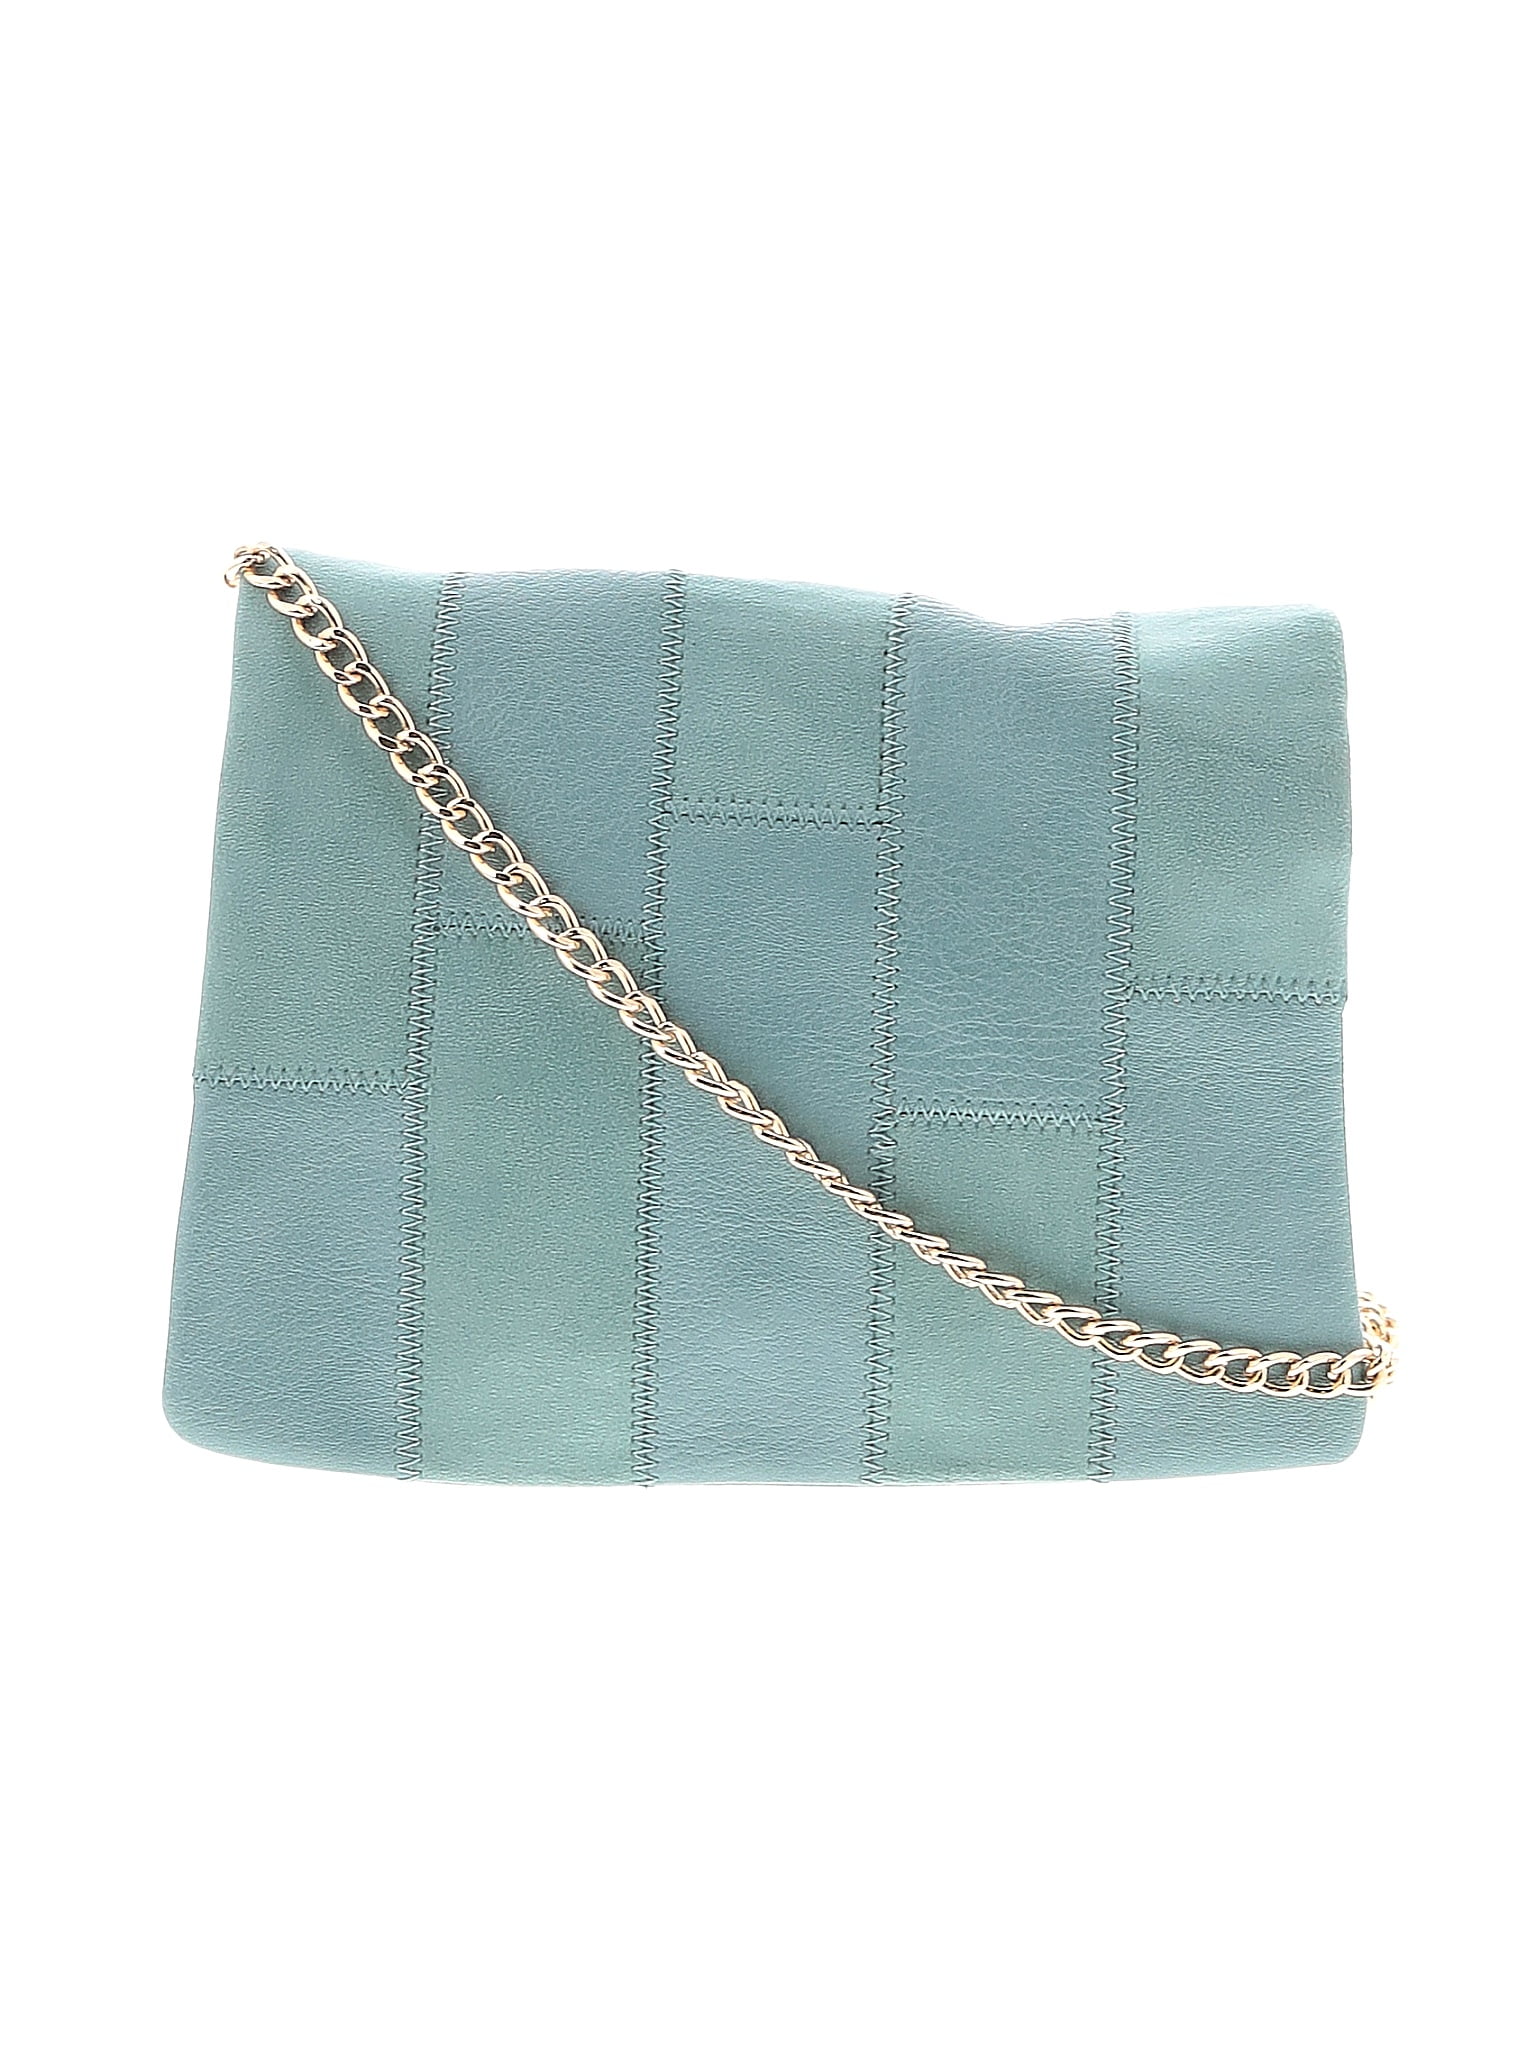 LC Lauren Conrad Zipper Shoulder Bags for Women